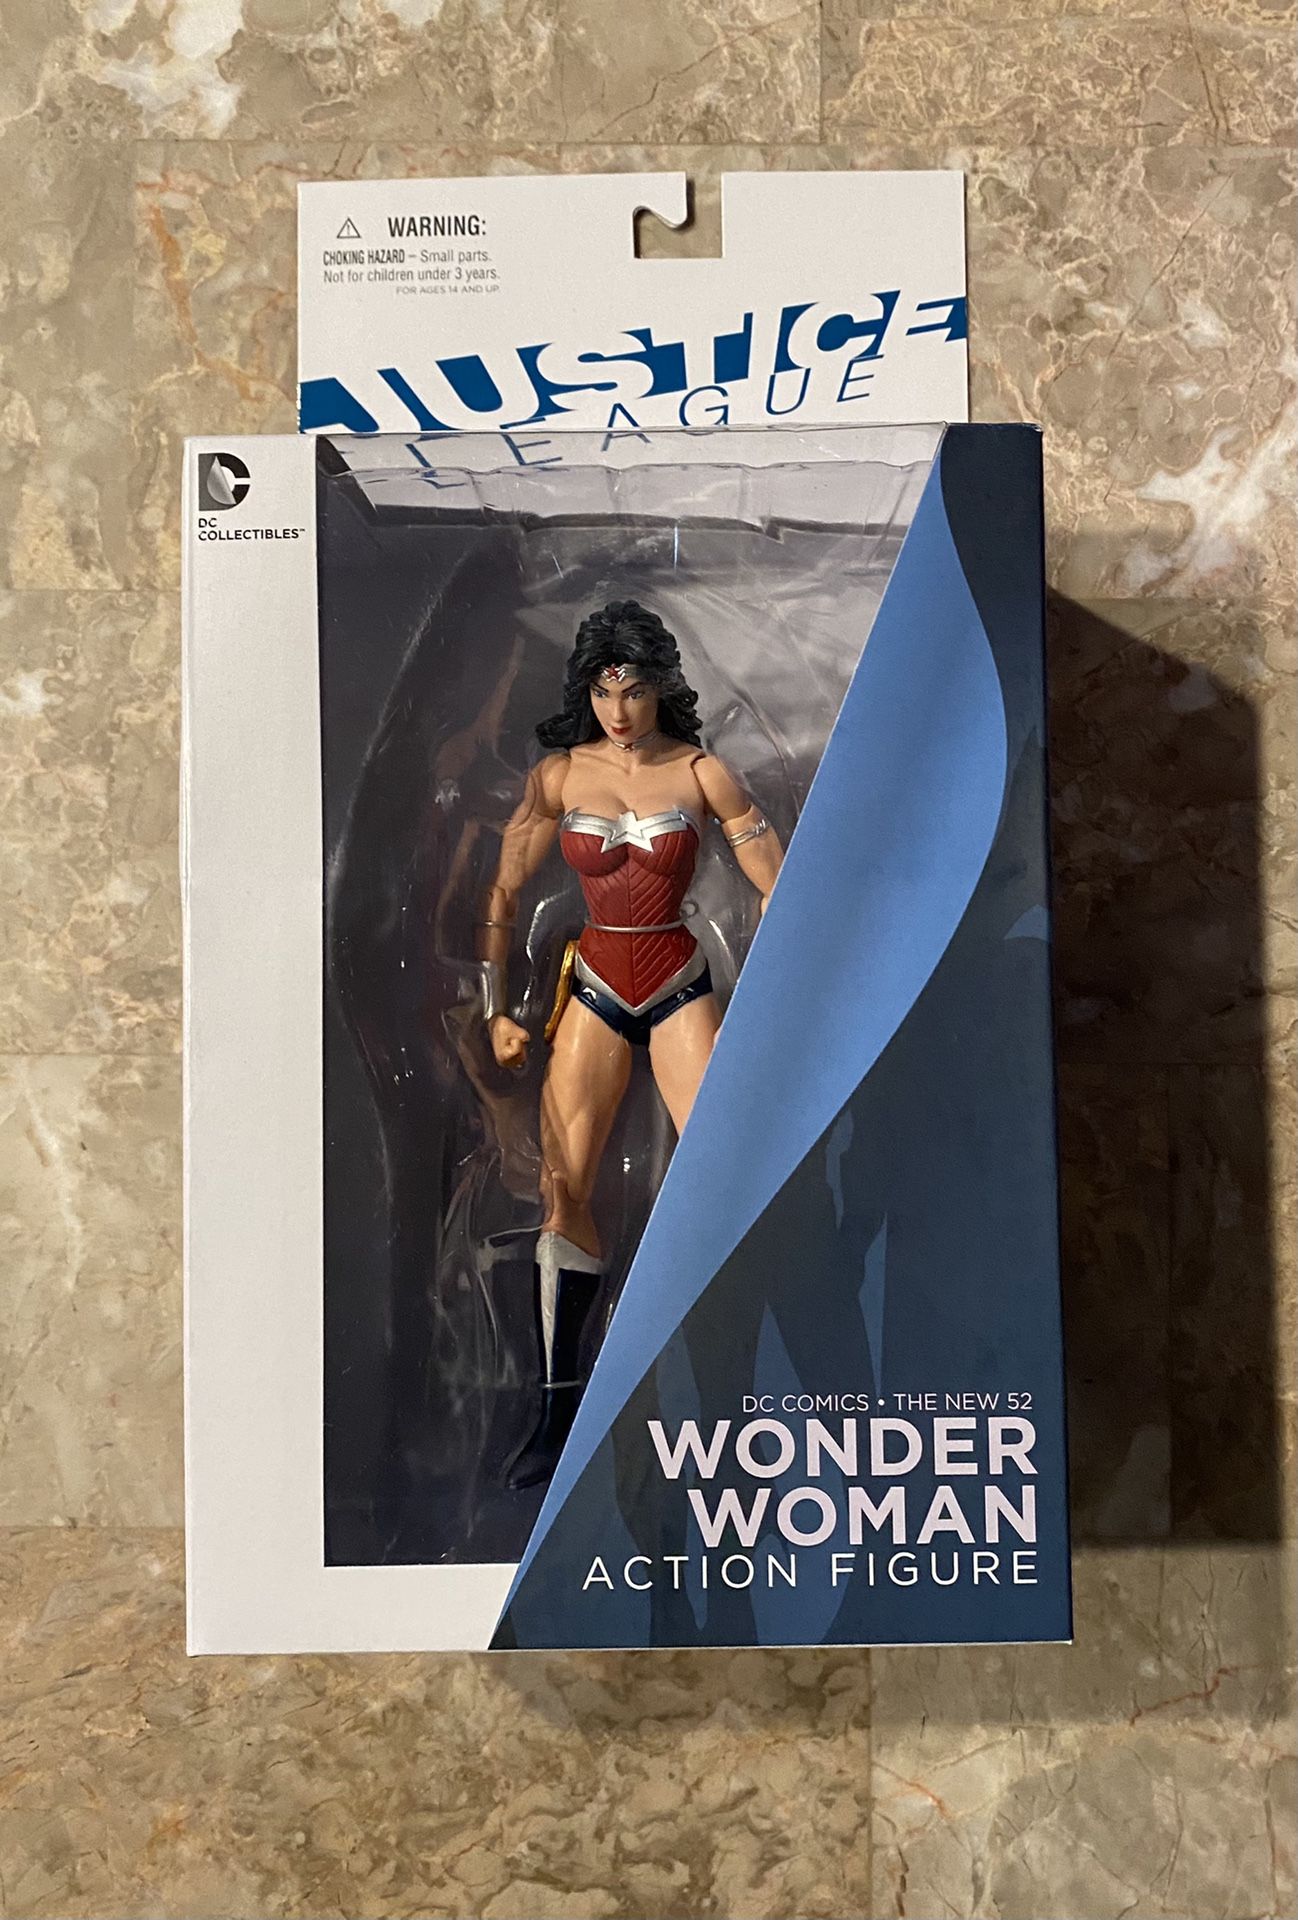 New 52 Justice League Wonder Woman Action Figure